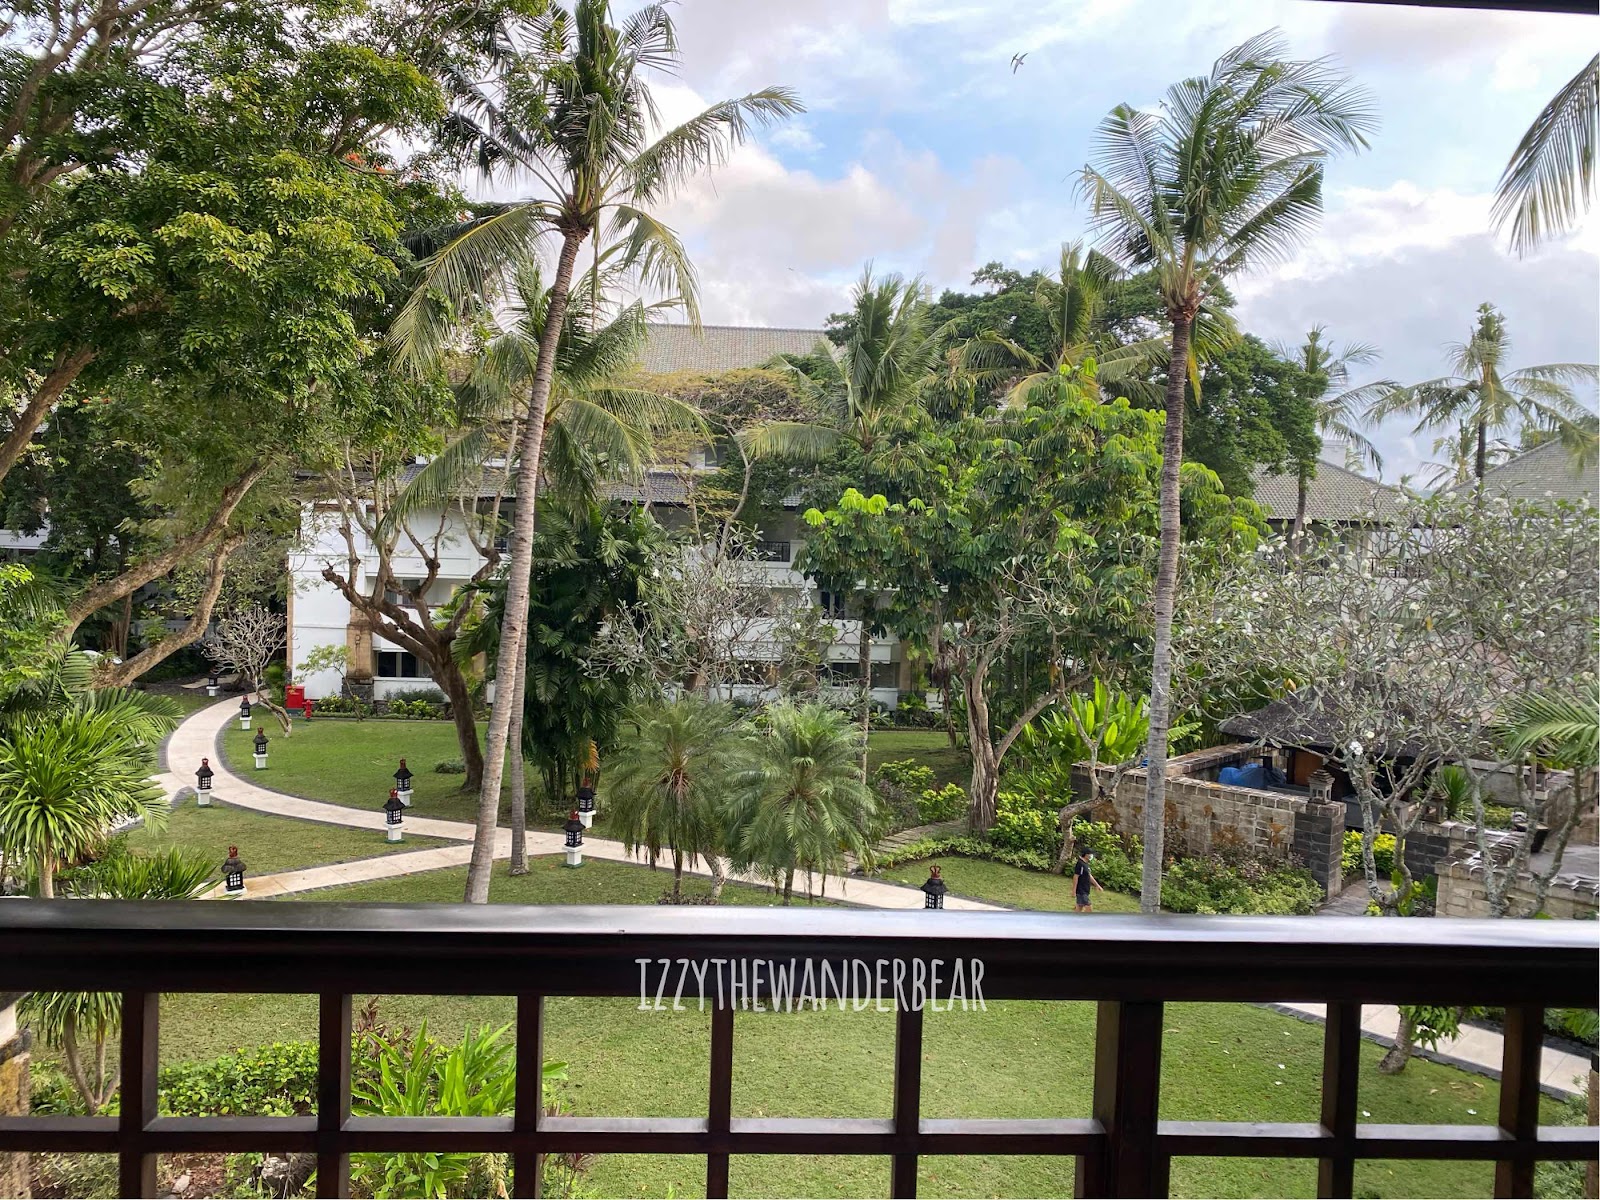 Staycation at Intercontinental Bali Resort, Jimbaran